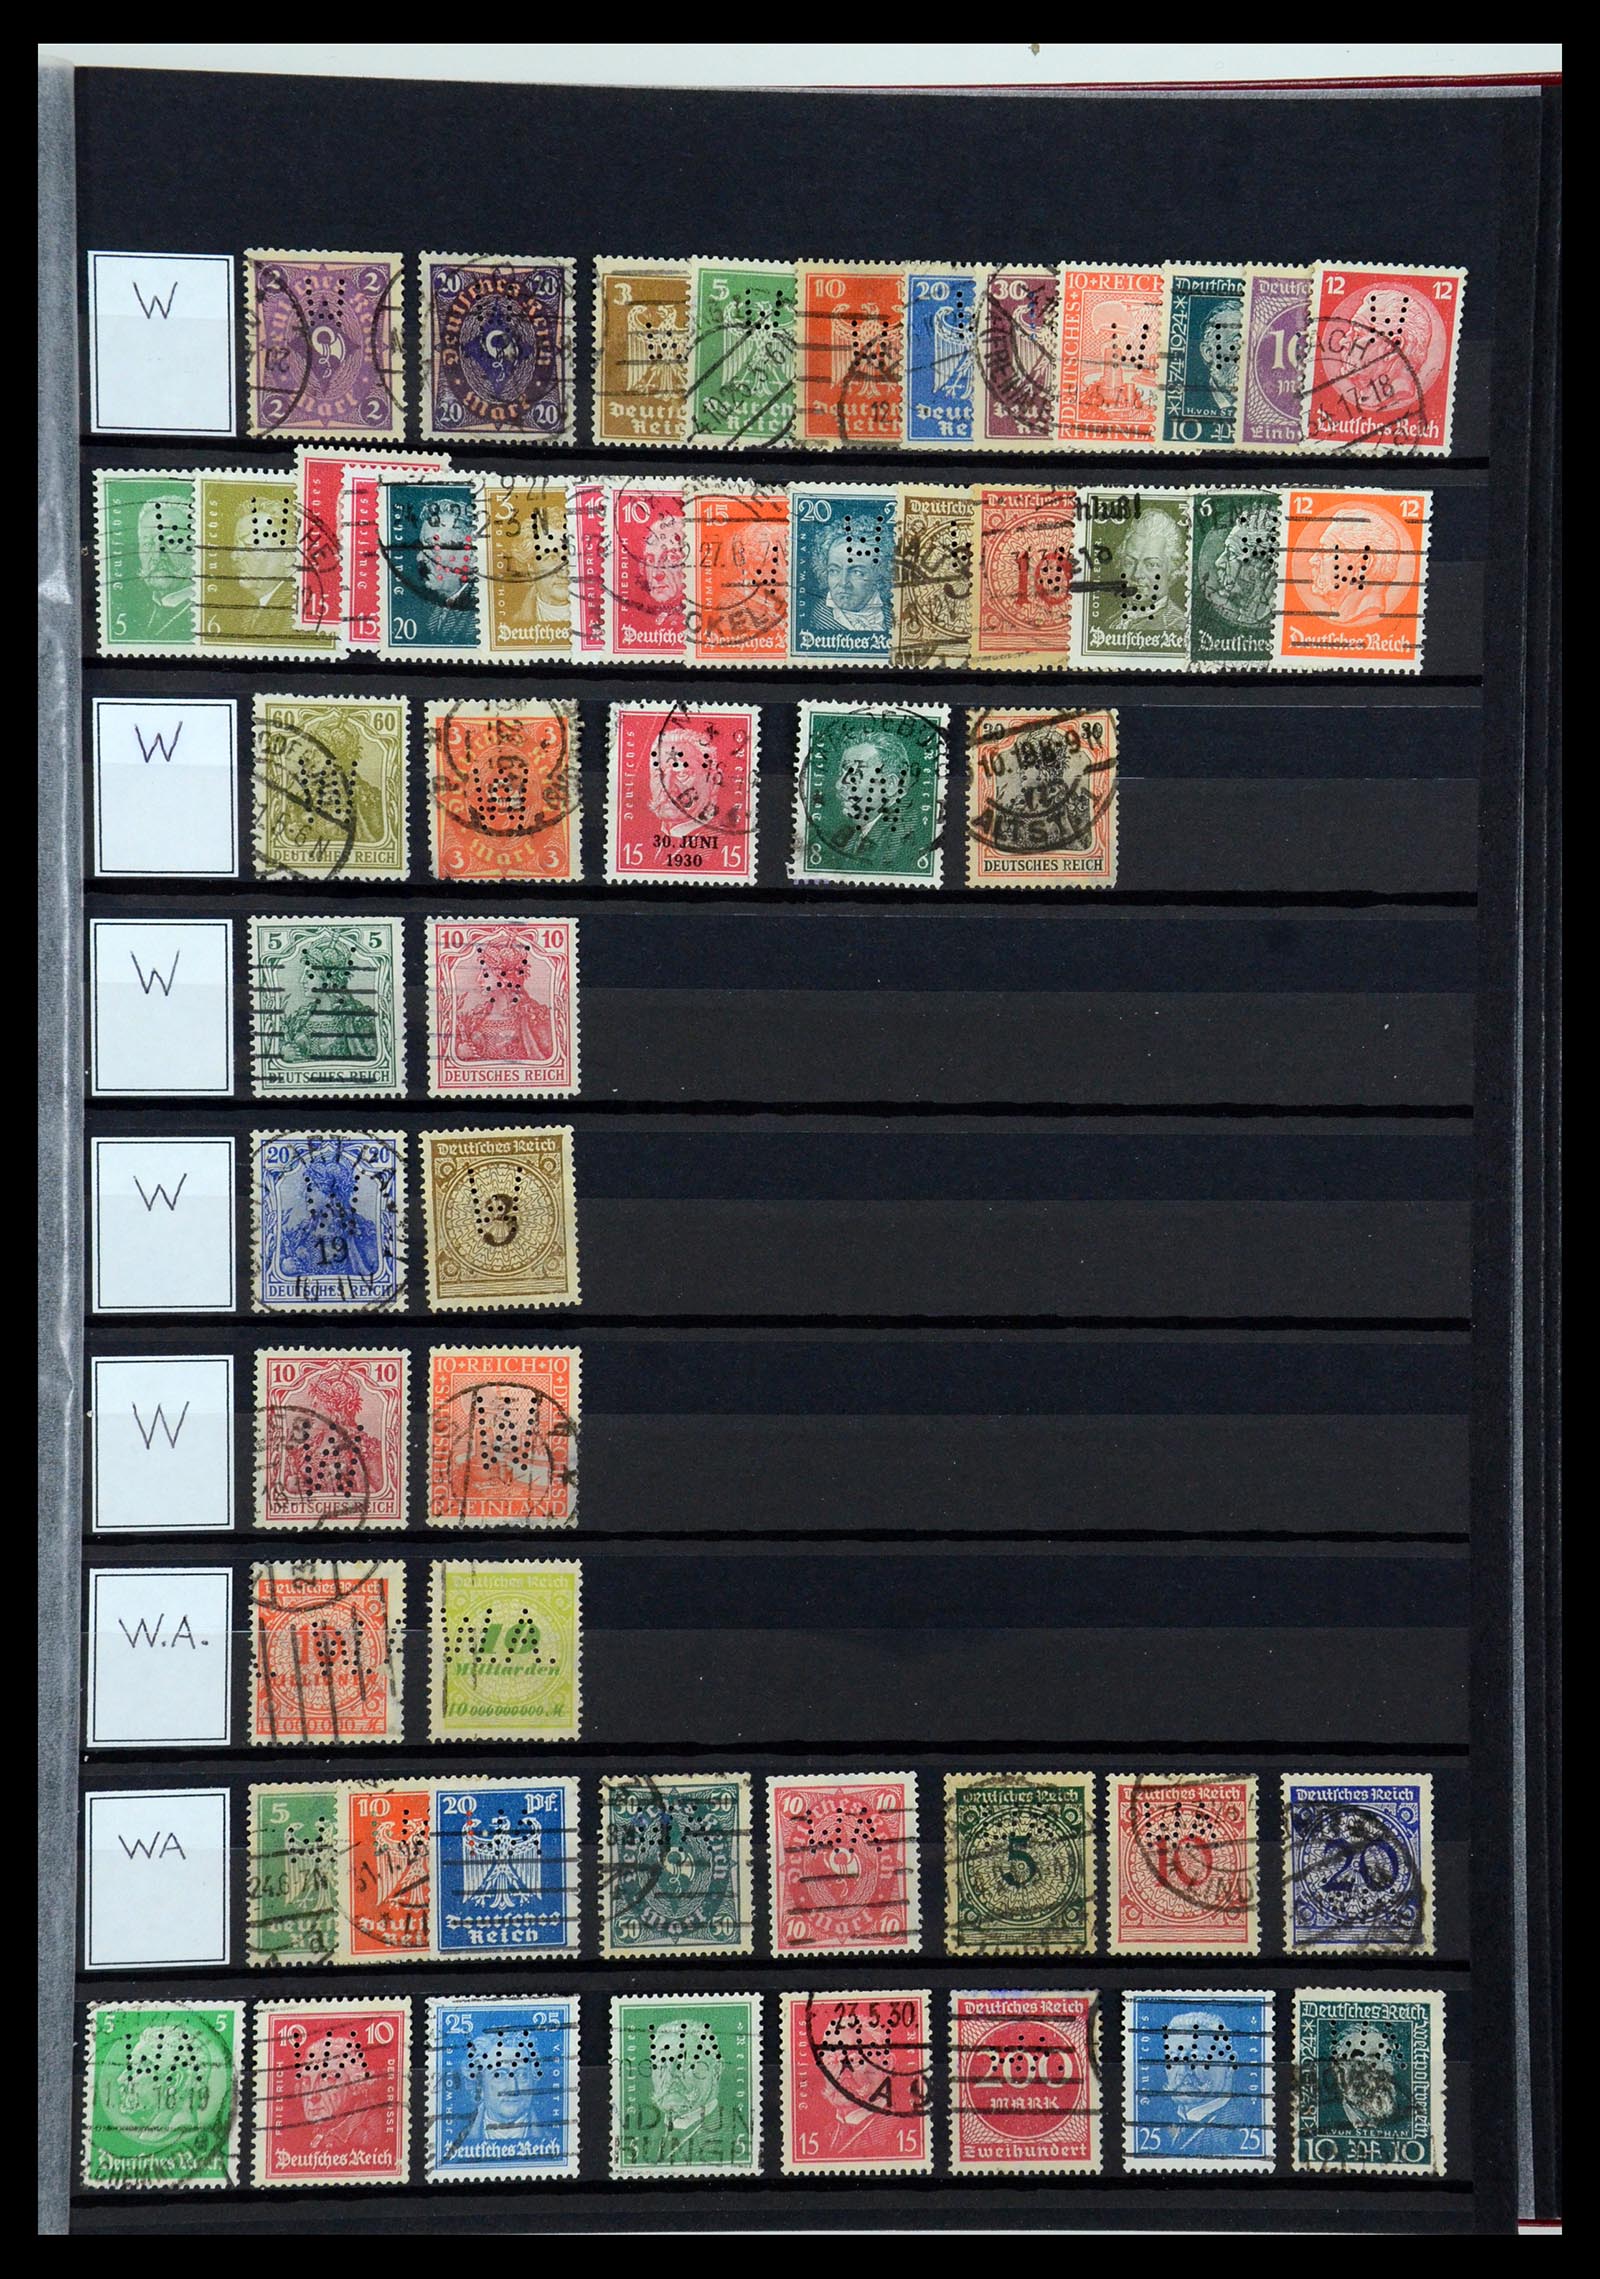 36405 333 - Stamp collection 36405 German Reich perfins 1880-1945.